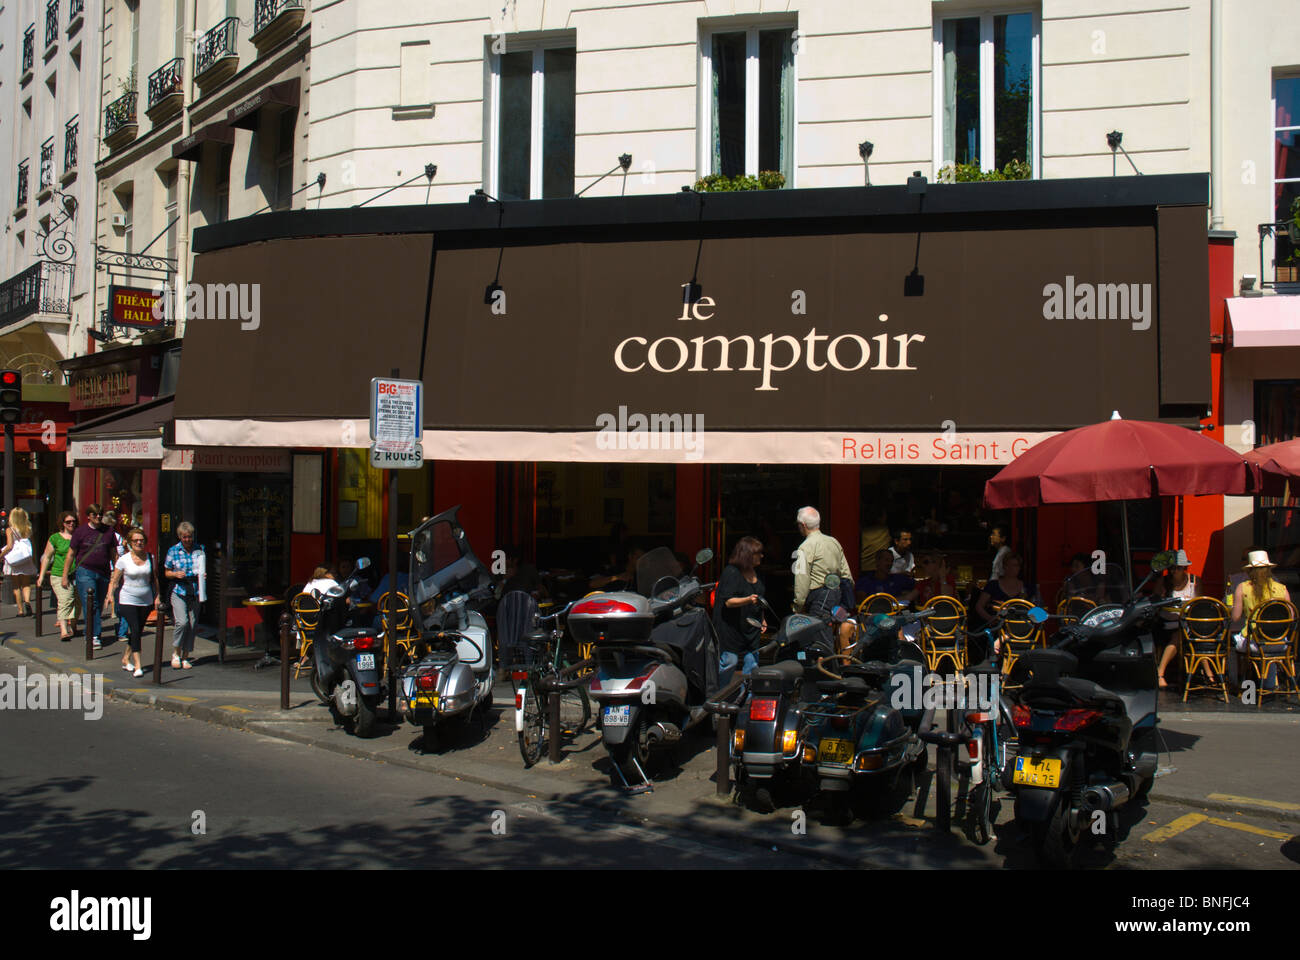 Le comptoir café restaurant extérieur bistro St-Germain-des-Pres Paris France Europe Banque D'Images